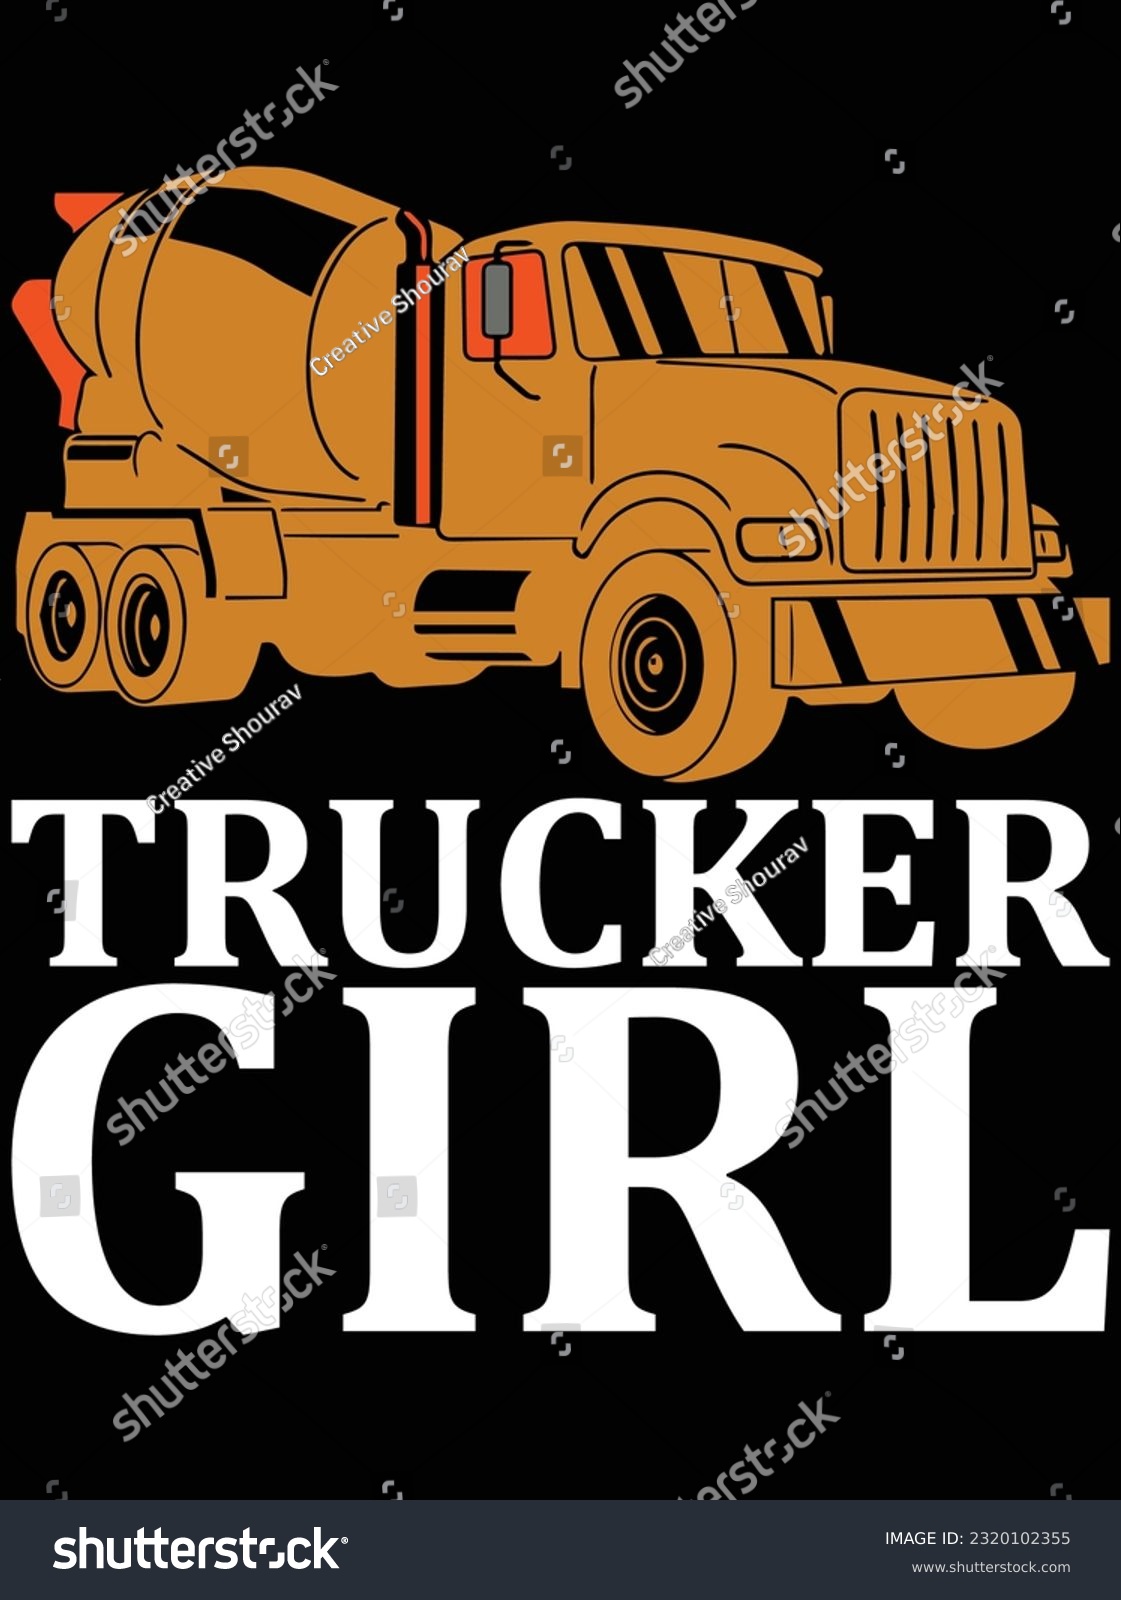 SVG of Trucker girl vector art design, eps file. design file for t-shirt. SVG, EPS cuttable design file svg